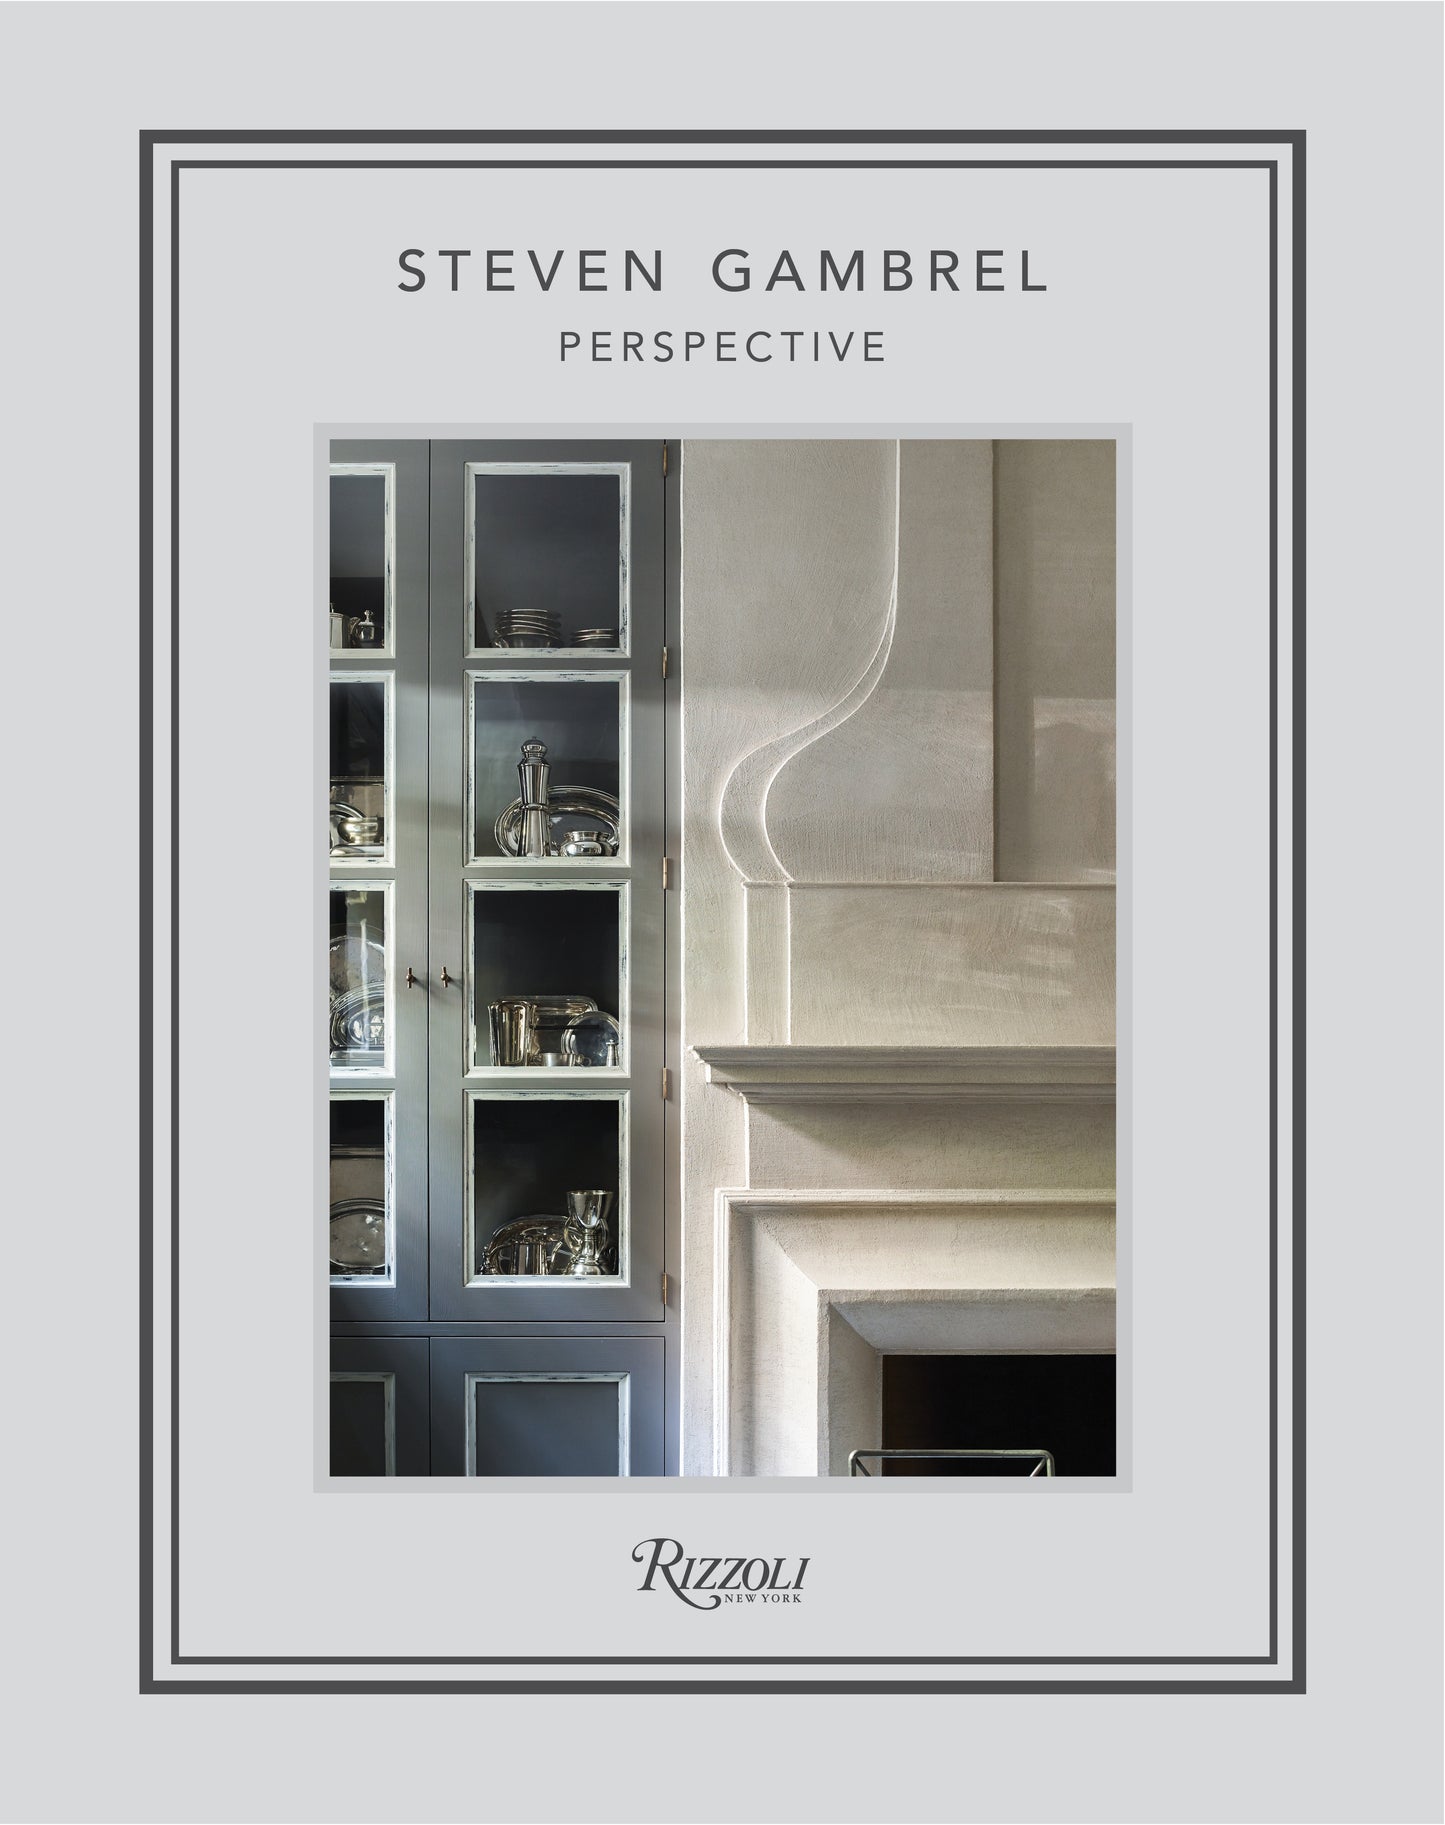 Steven Gambrell: Perspective by Steven Gambrell